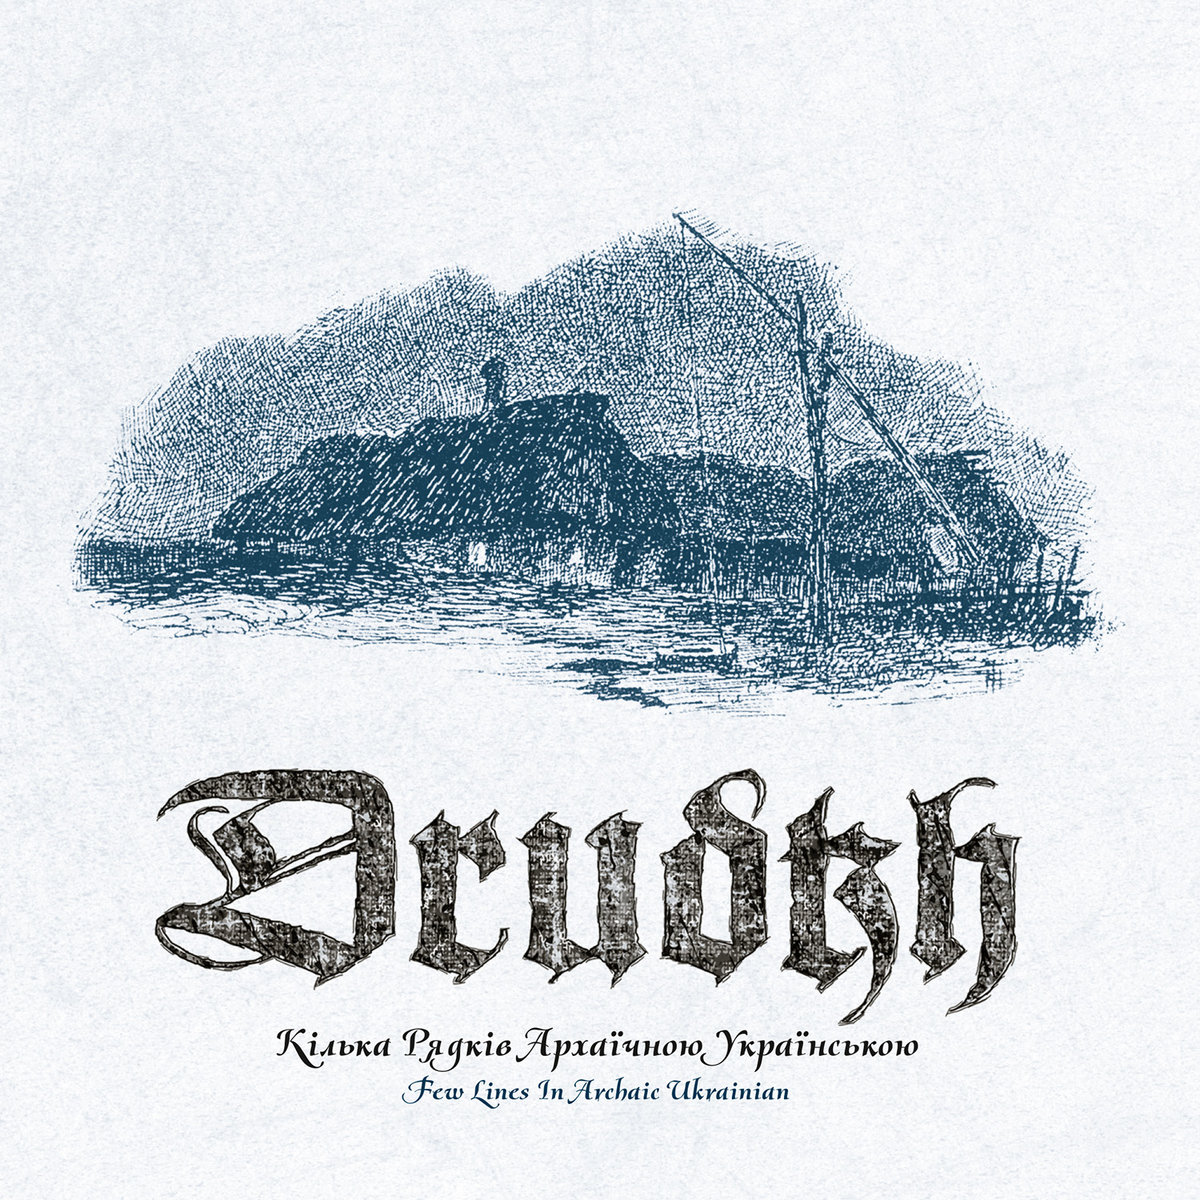 drudkh – Кілька рядків архаїчною українською (a few lines in archaic ukrainian)